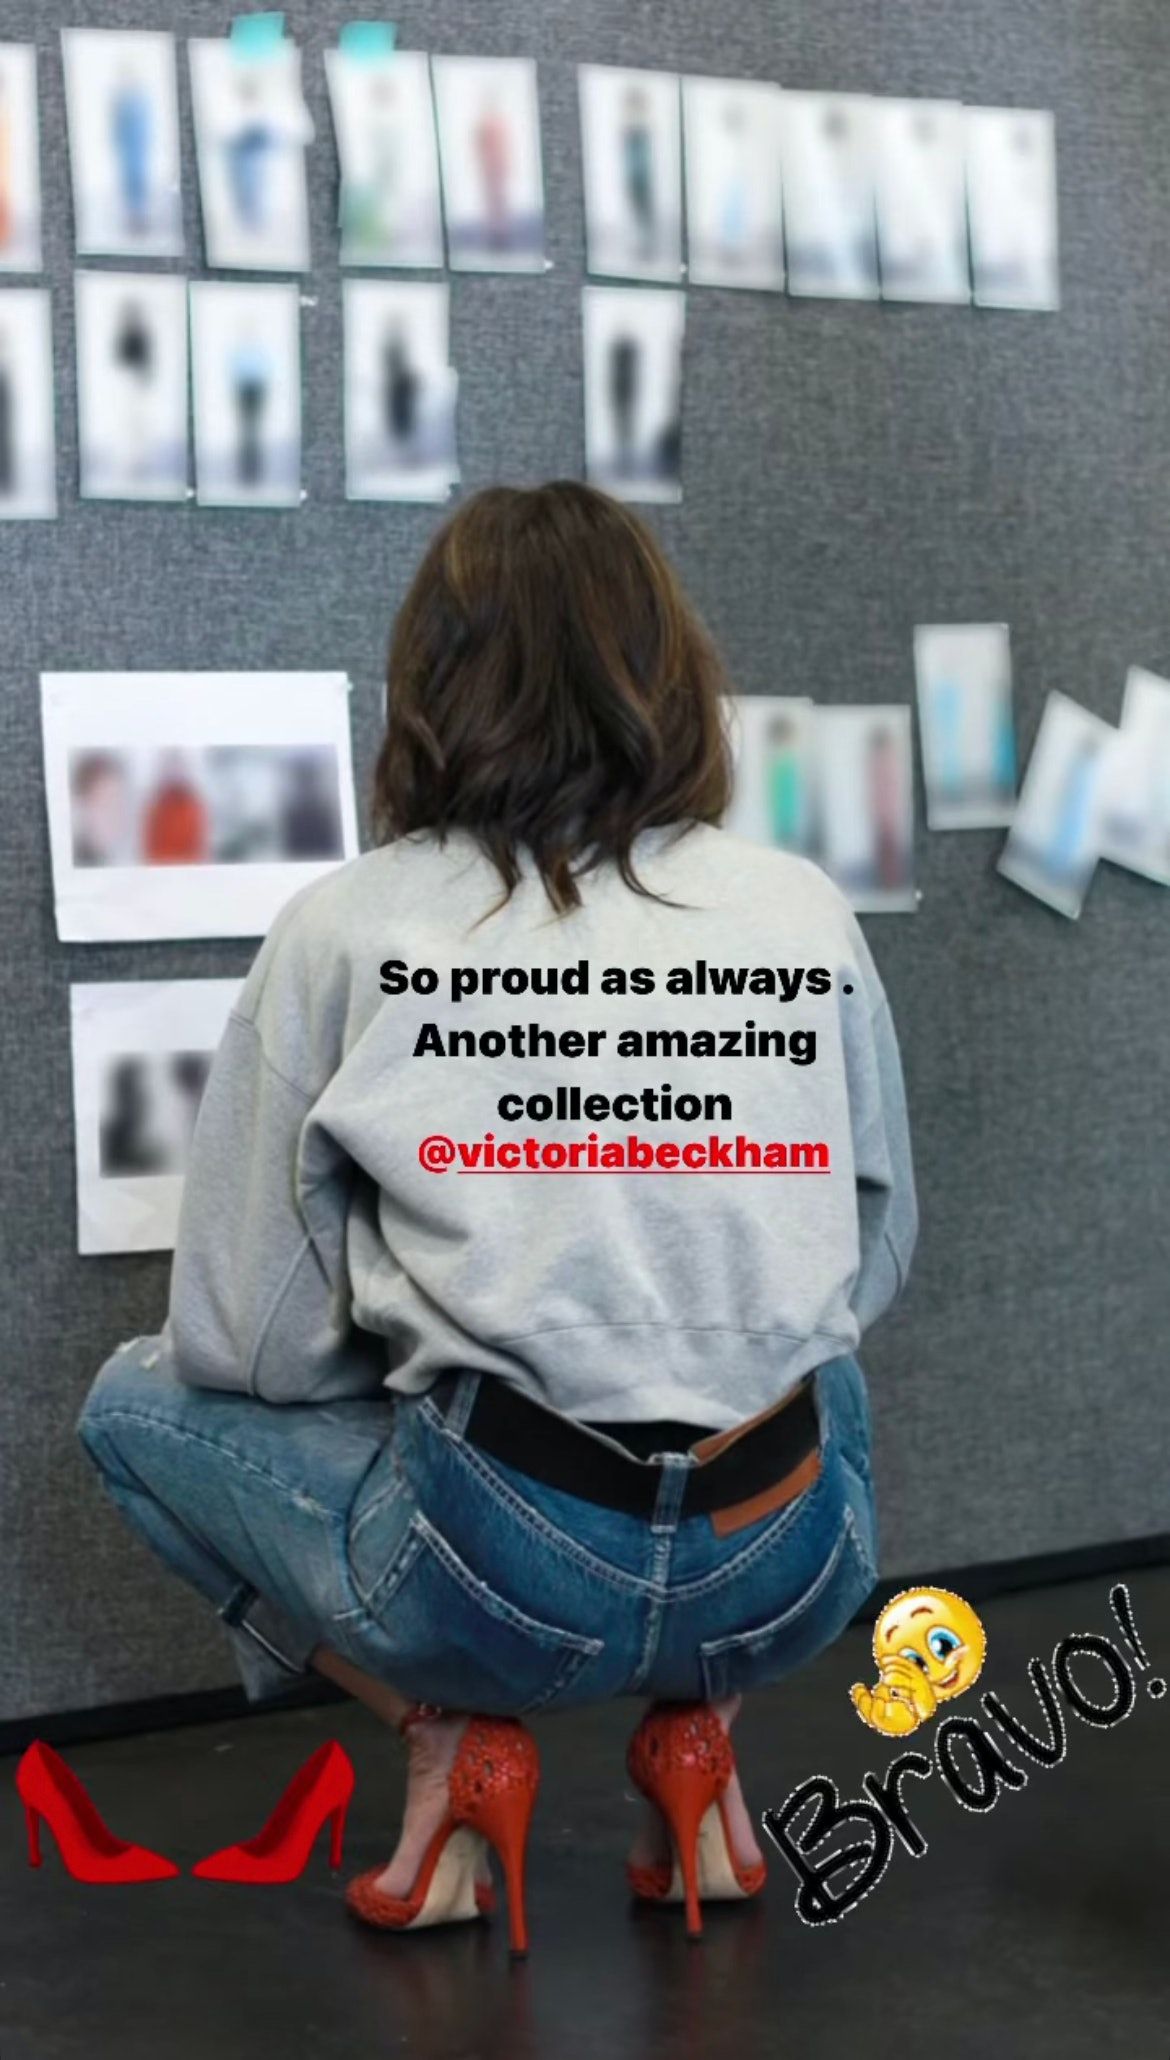 Η πιο πρόσφατη συλλογή μόδας της Victoria Beckham ήταν εμπνευσμένη από τον David